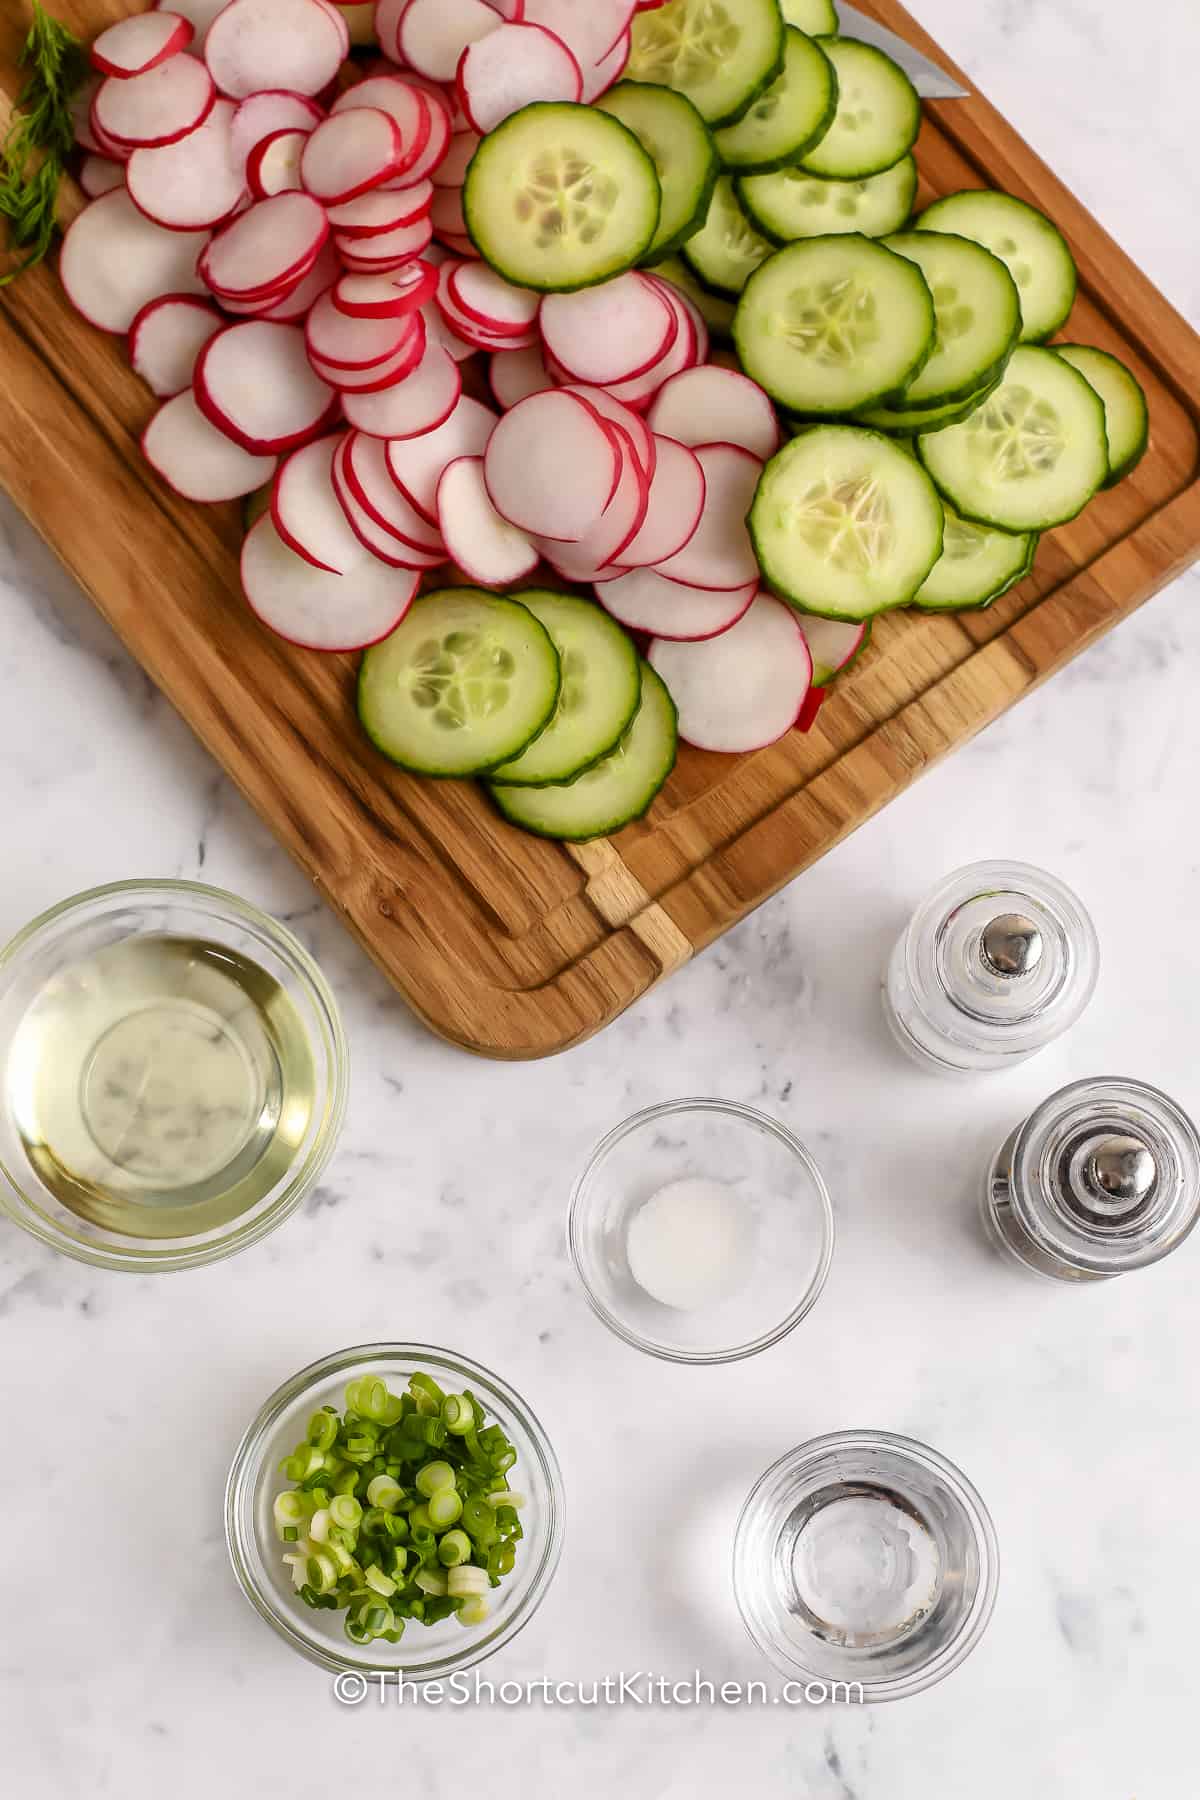 ingredients assembled to make cucumber radish salad